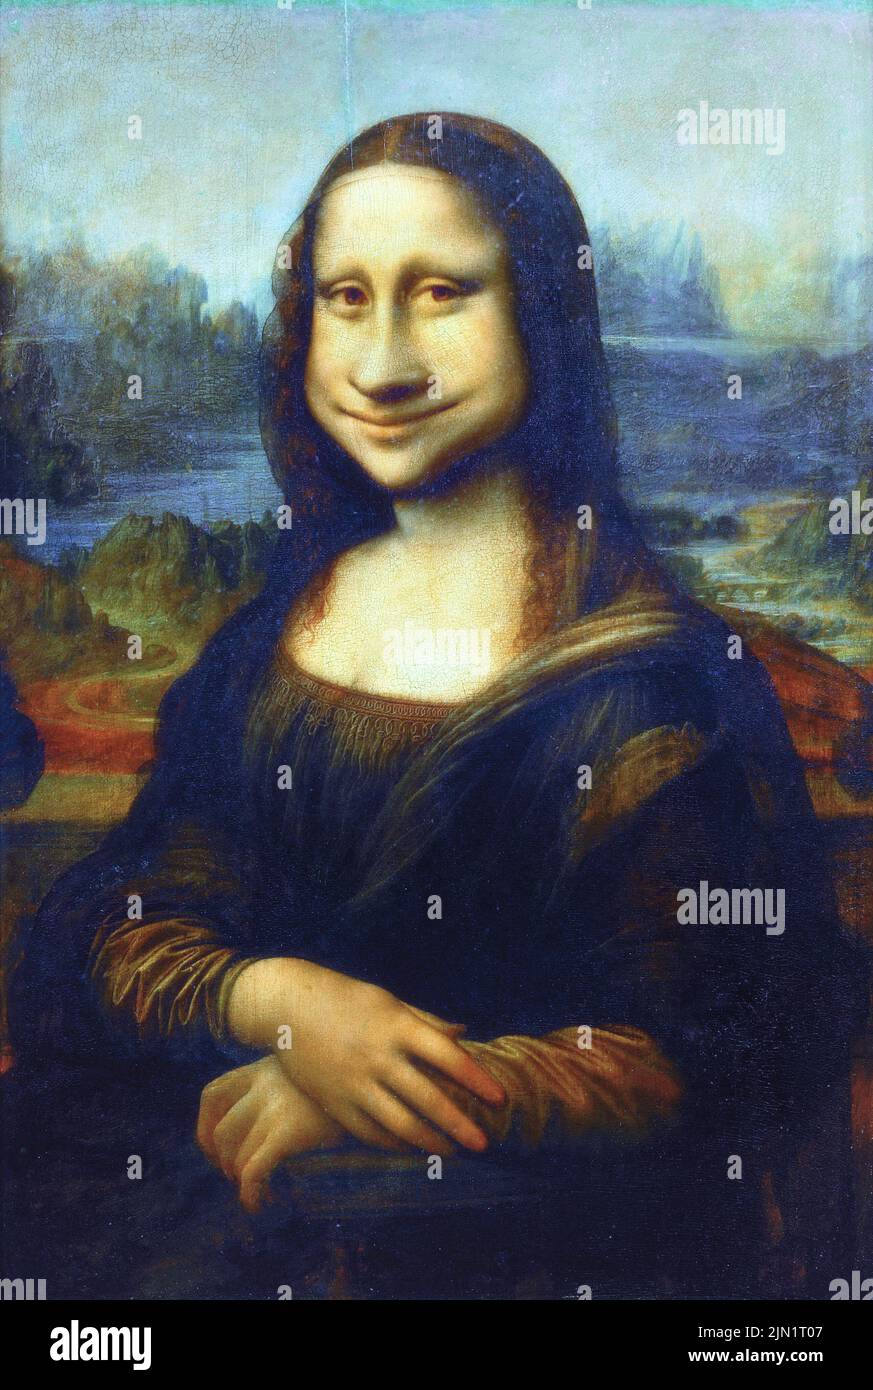 Divertente caricatura di Mona Lisa pittura Foto Stock